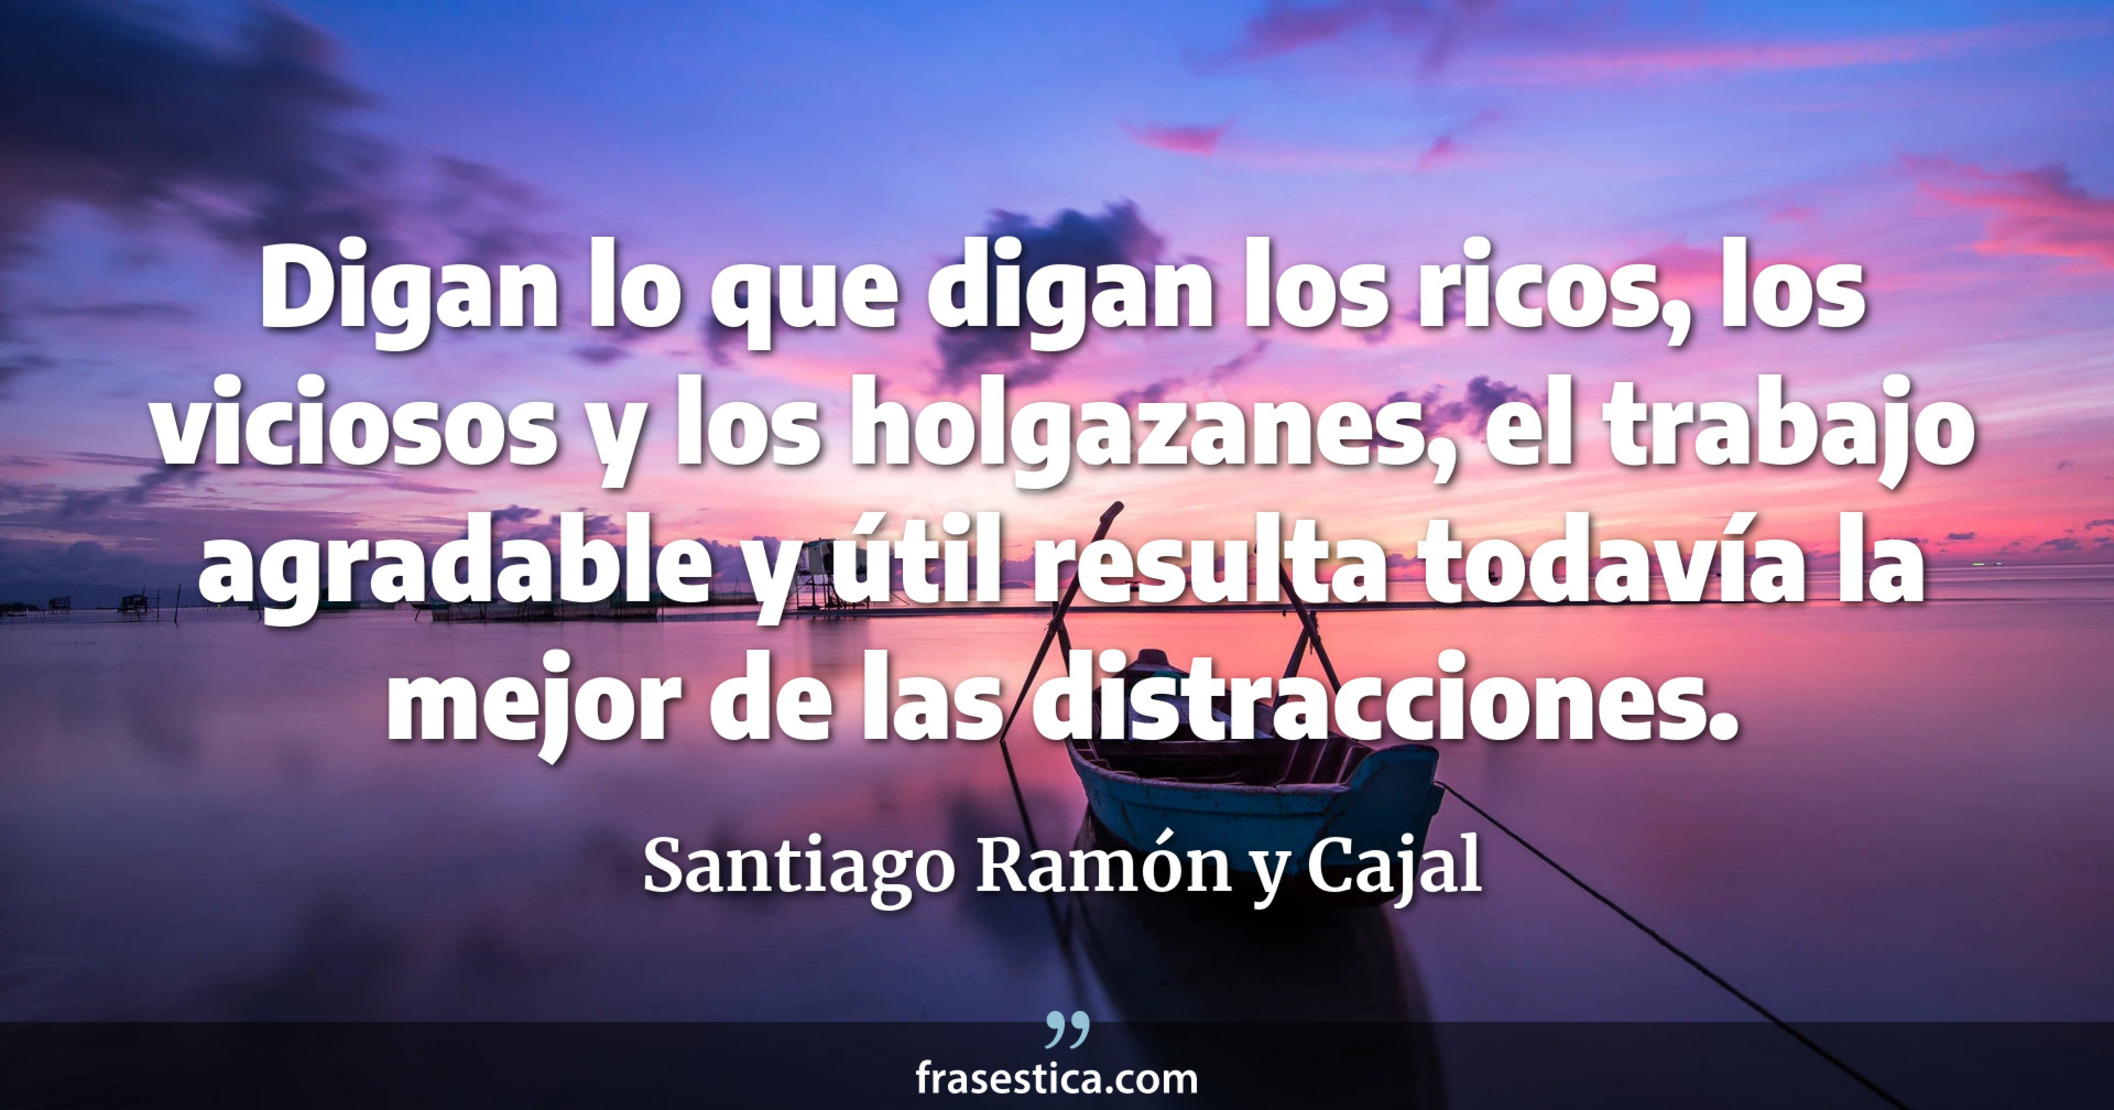 Digan lo que digan los ricos, los viciosos y los holgazanes, el trabajo agradable y útil resulta todavía la mejor de las distracciones. - Santiago Ramón y Cajal